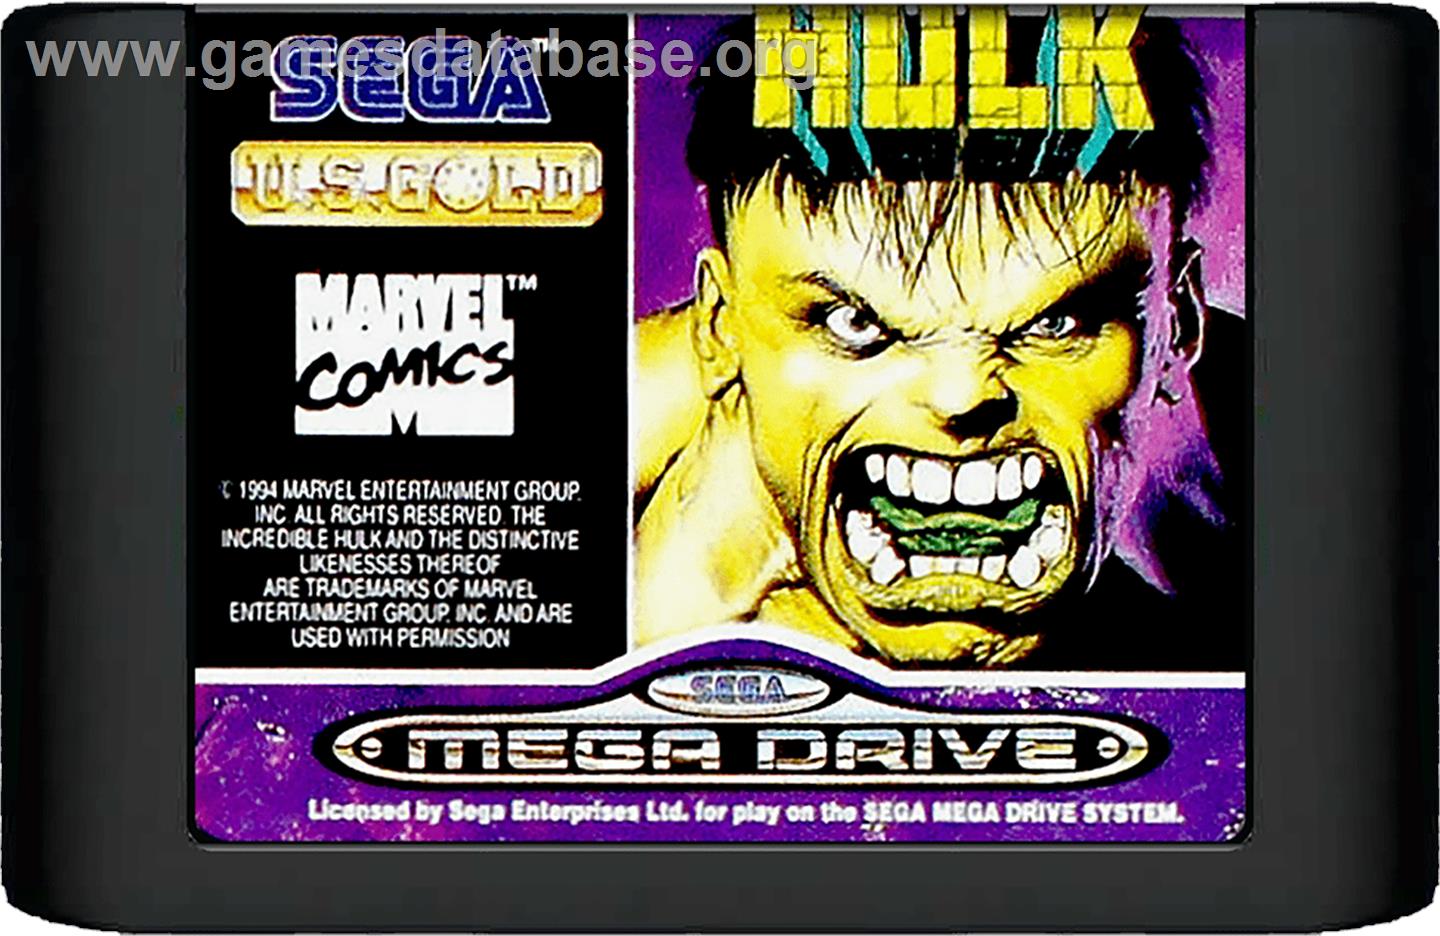 Incredible Hulk, The - Sega Genesis - Artwork - Cartridge